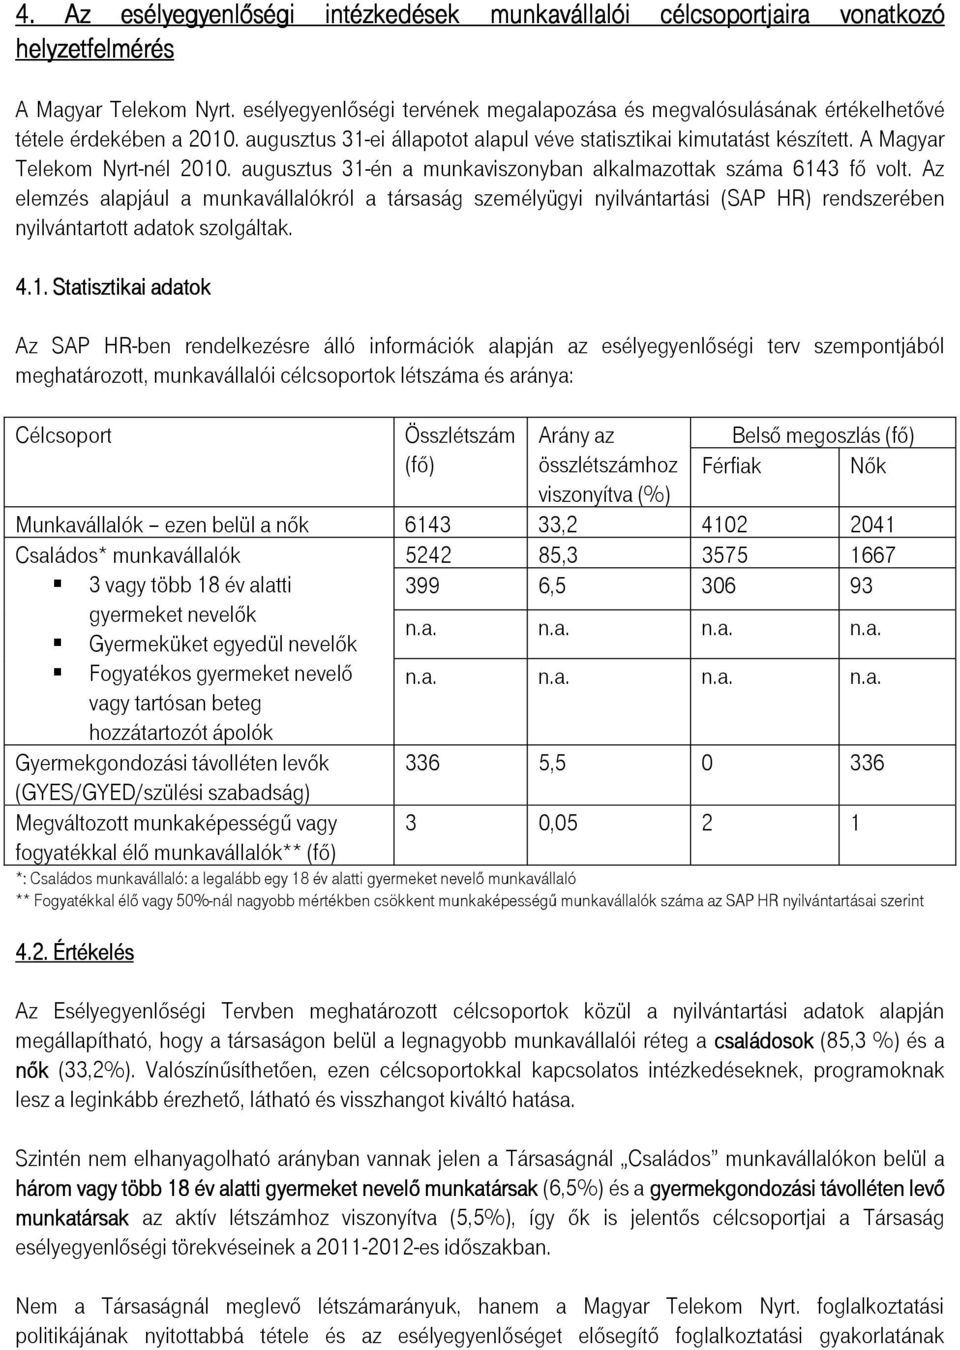 A Magyar Telekom Nyrt-nél 2010. augusztus 31-én a munkaviszonyban alkalmazottak száma 6143 fı volt.